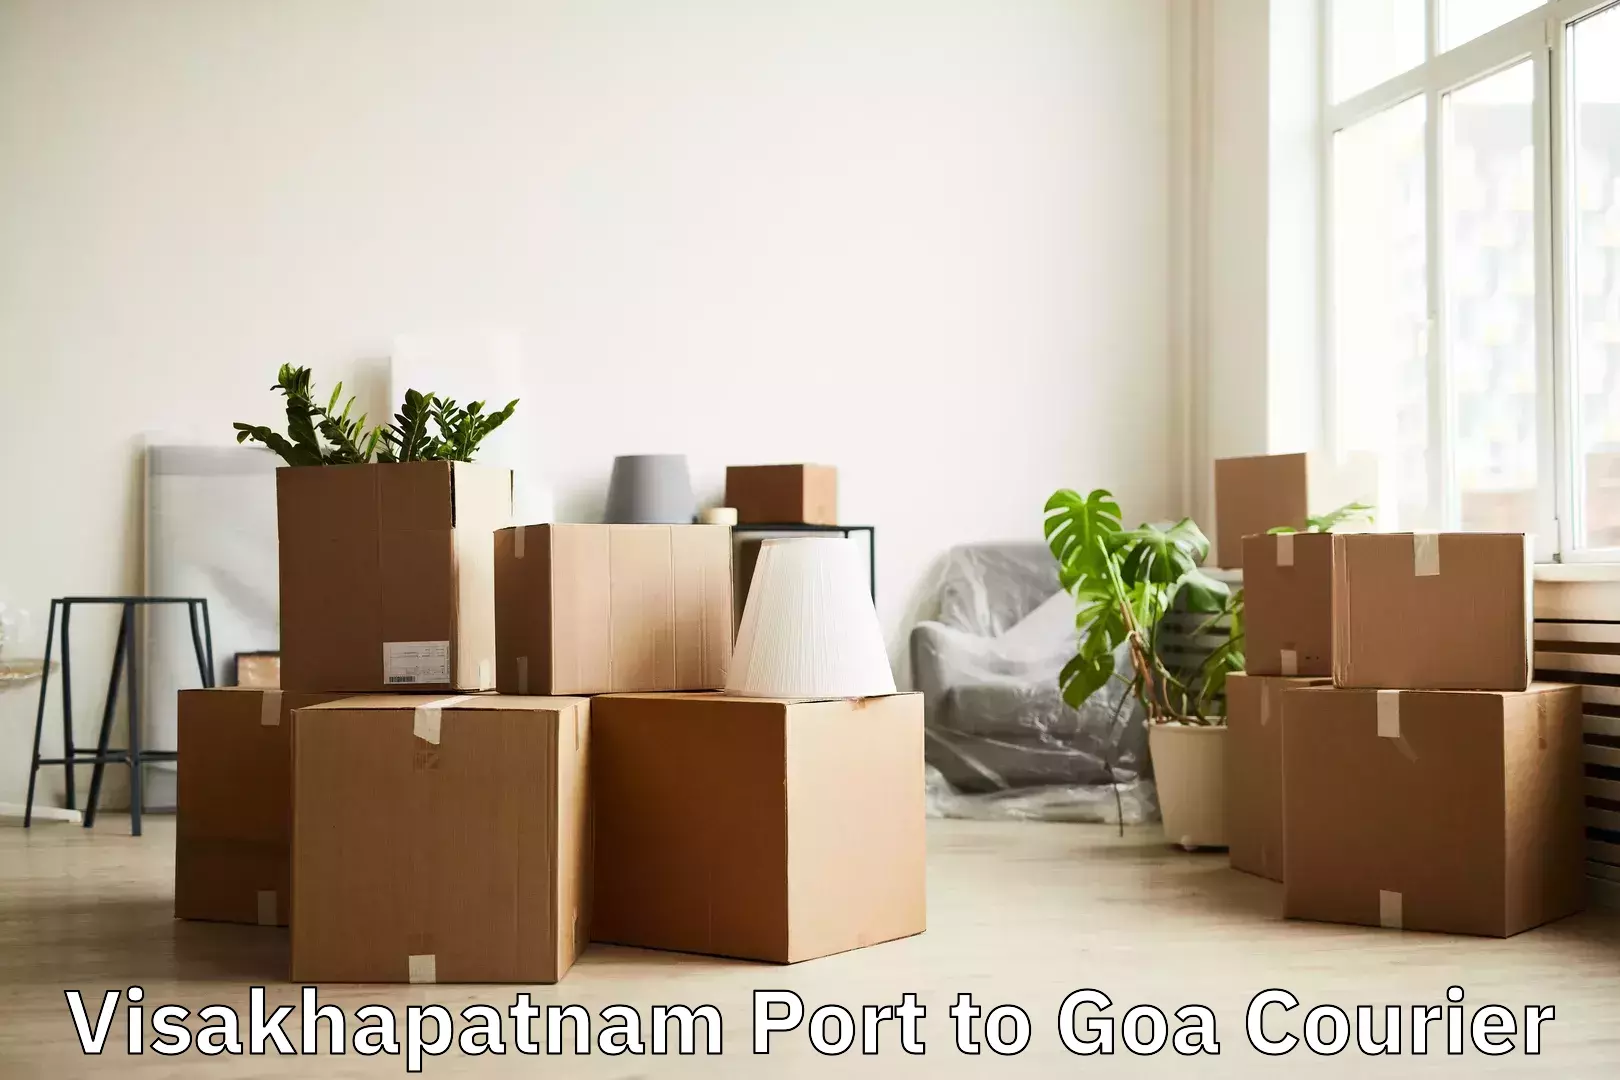 Luggage transport consulting Visakhapatnam Port to Goa University